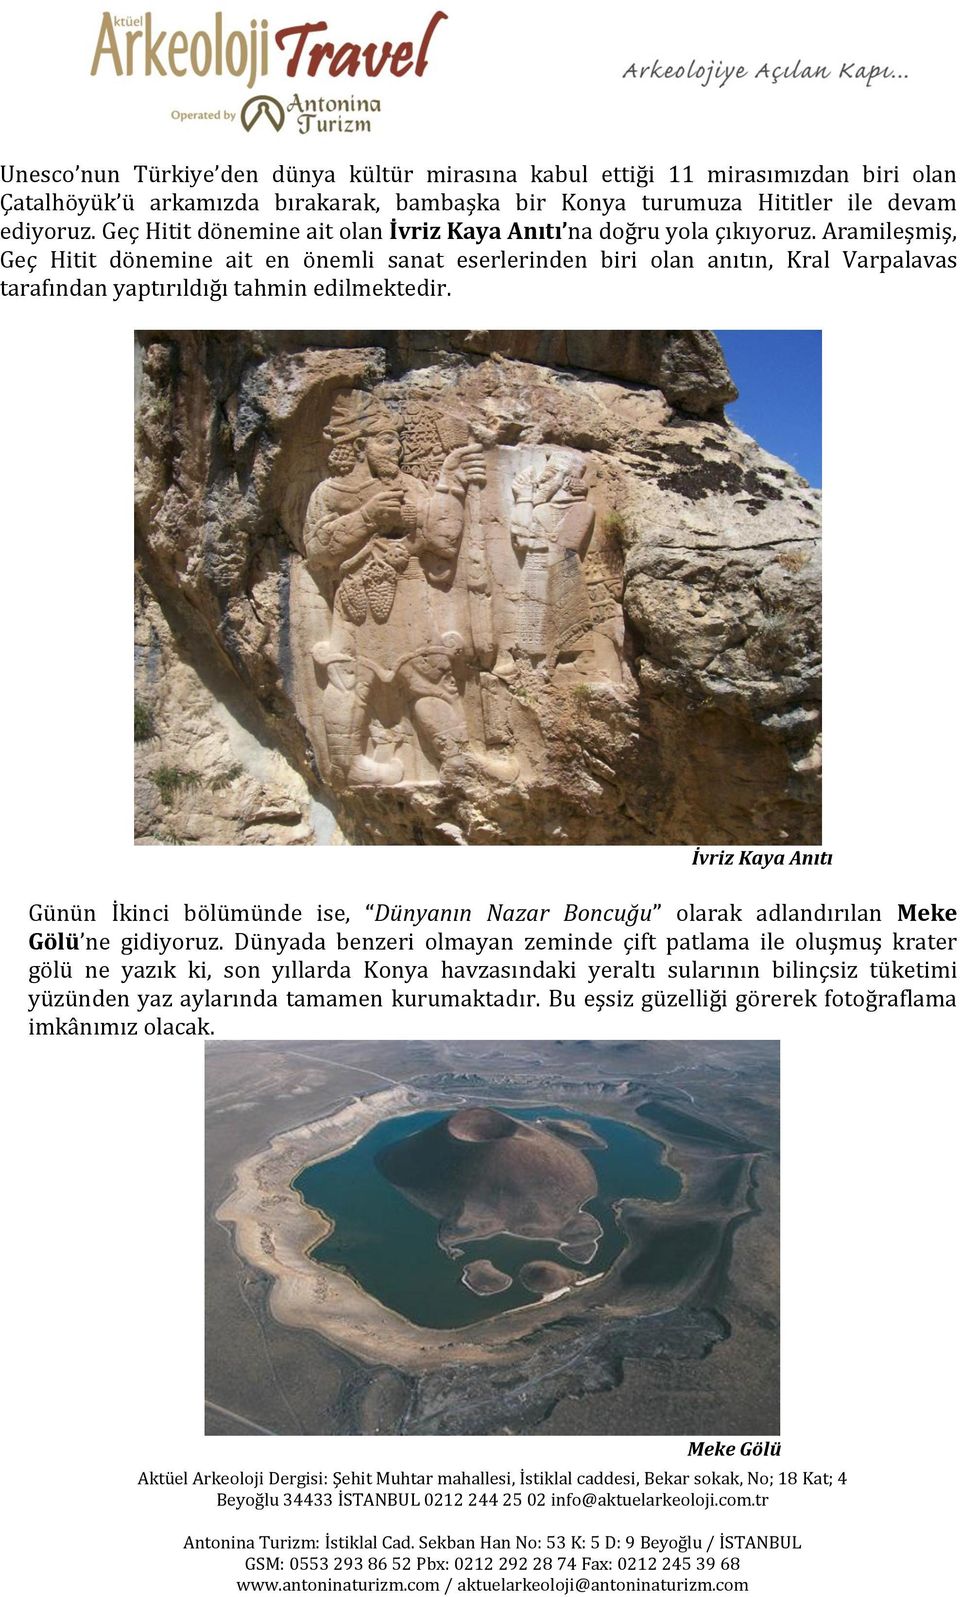 Aramileşmiş, Geç Hitit dönemine ait en önemli sanat eserlerinden biri olan anıtın, Kral Varpalavas tarafından yaptırıldığı tahmin edilmektedir.